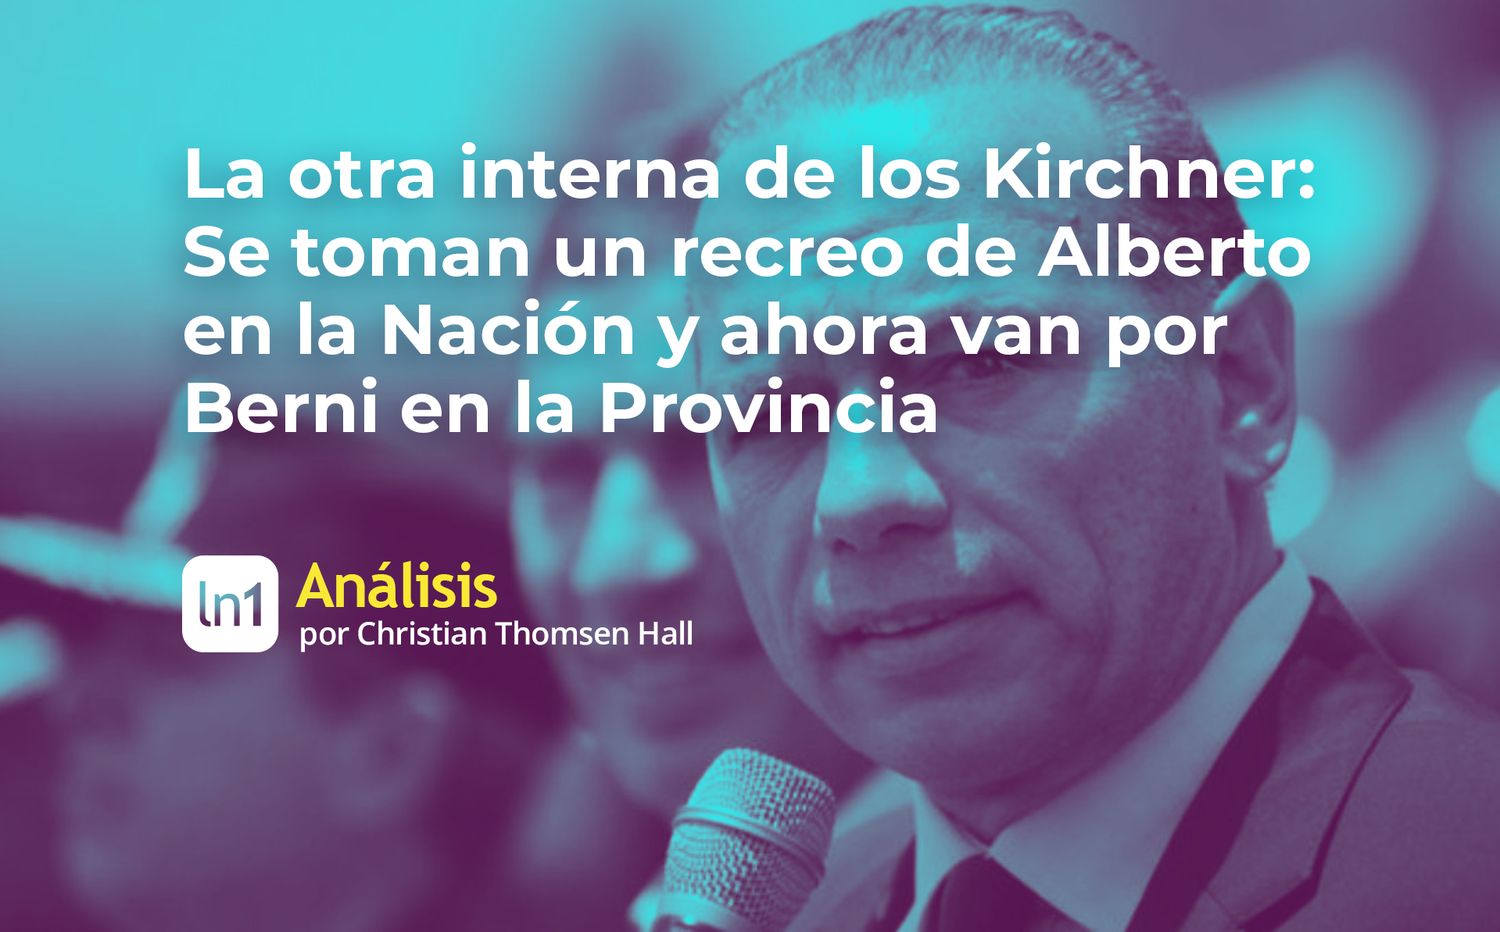 La otra interna de los Kirchner: Se toman un recreo de Alberto en la Nación y ahora van por Berni en la Provincia